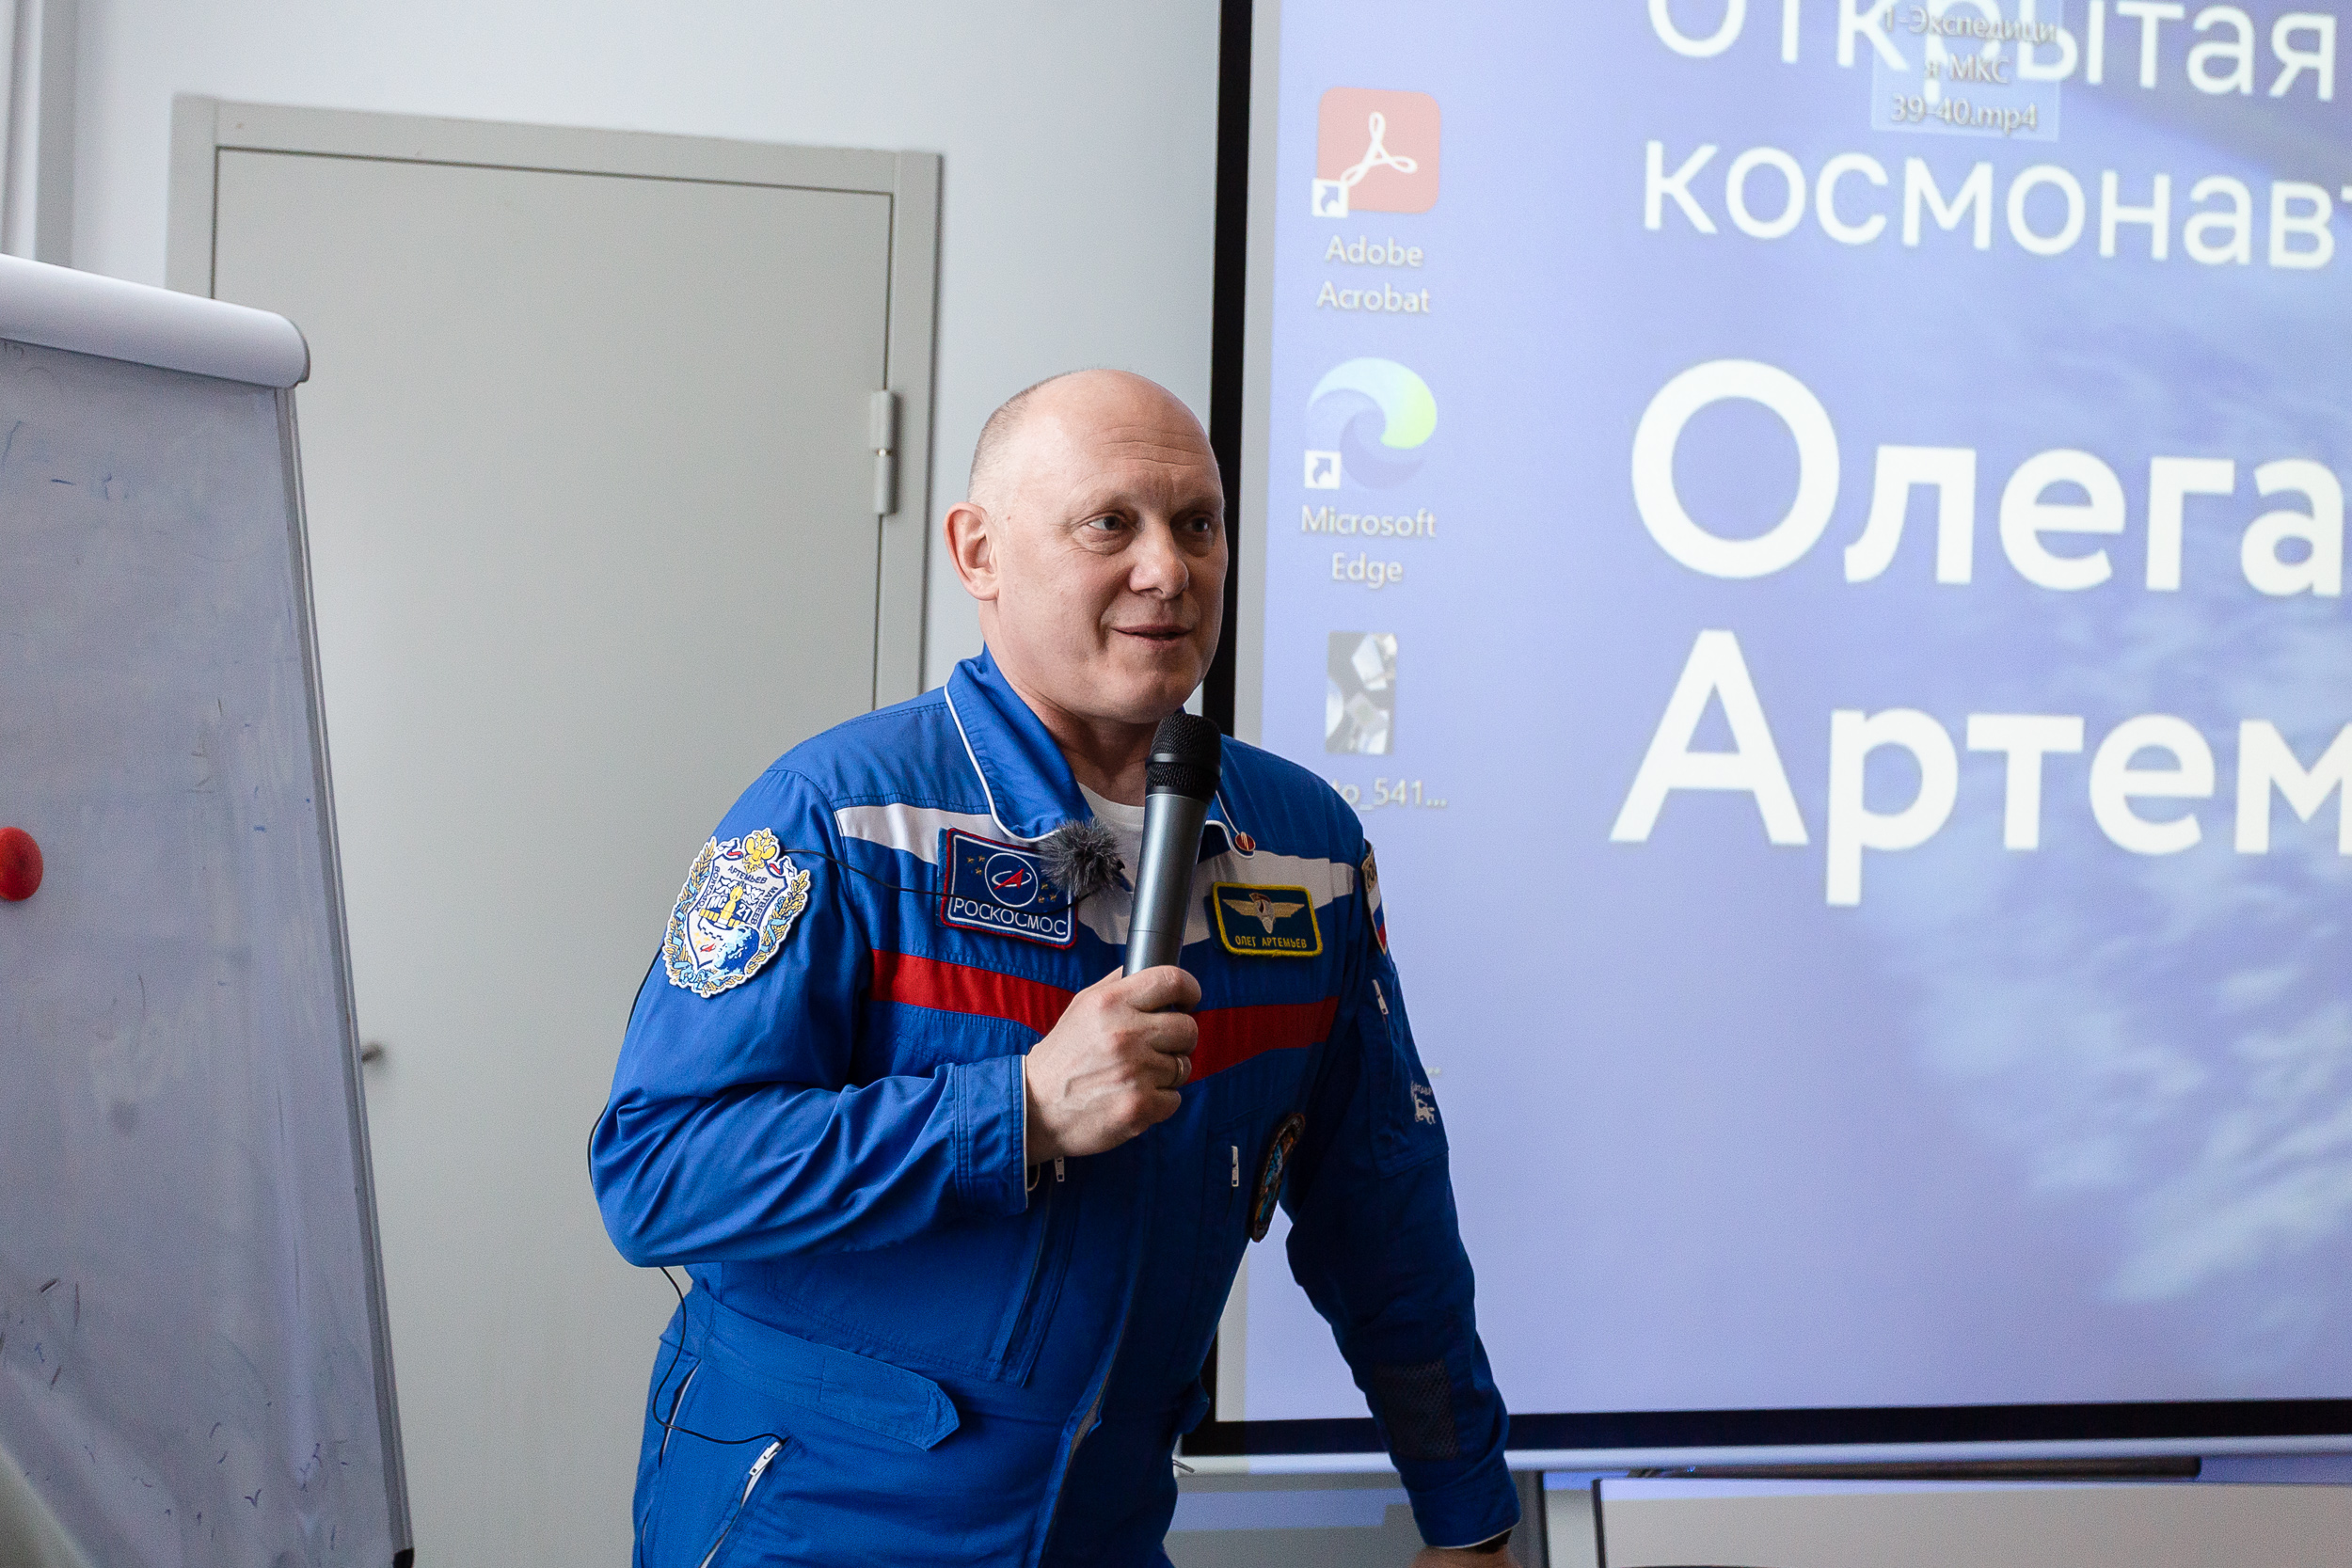 Наука на высоте: космонавт Олег Артемьев рассказал о научных экспериментах на МКС